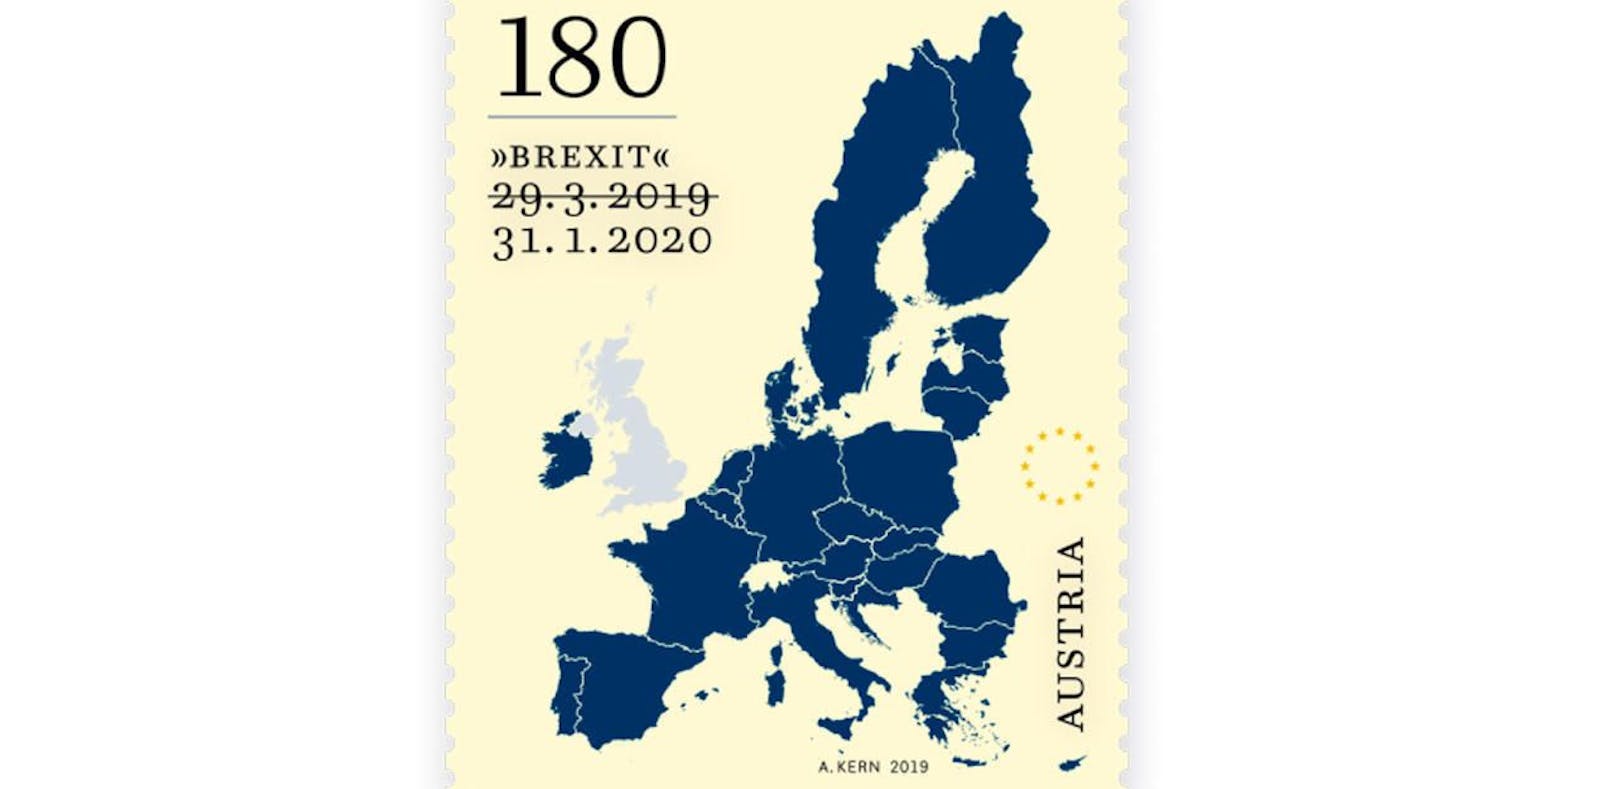 Das bereits gedruckte ursprüngliche Austrittsdatum auf der österreichischen Briefmarke wurde einfach überdruckt.